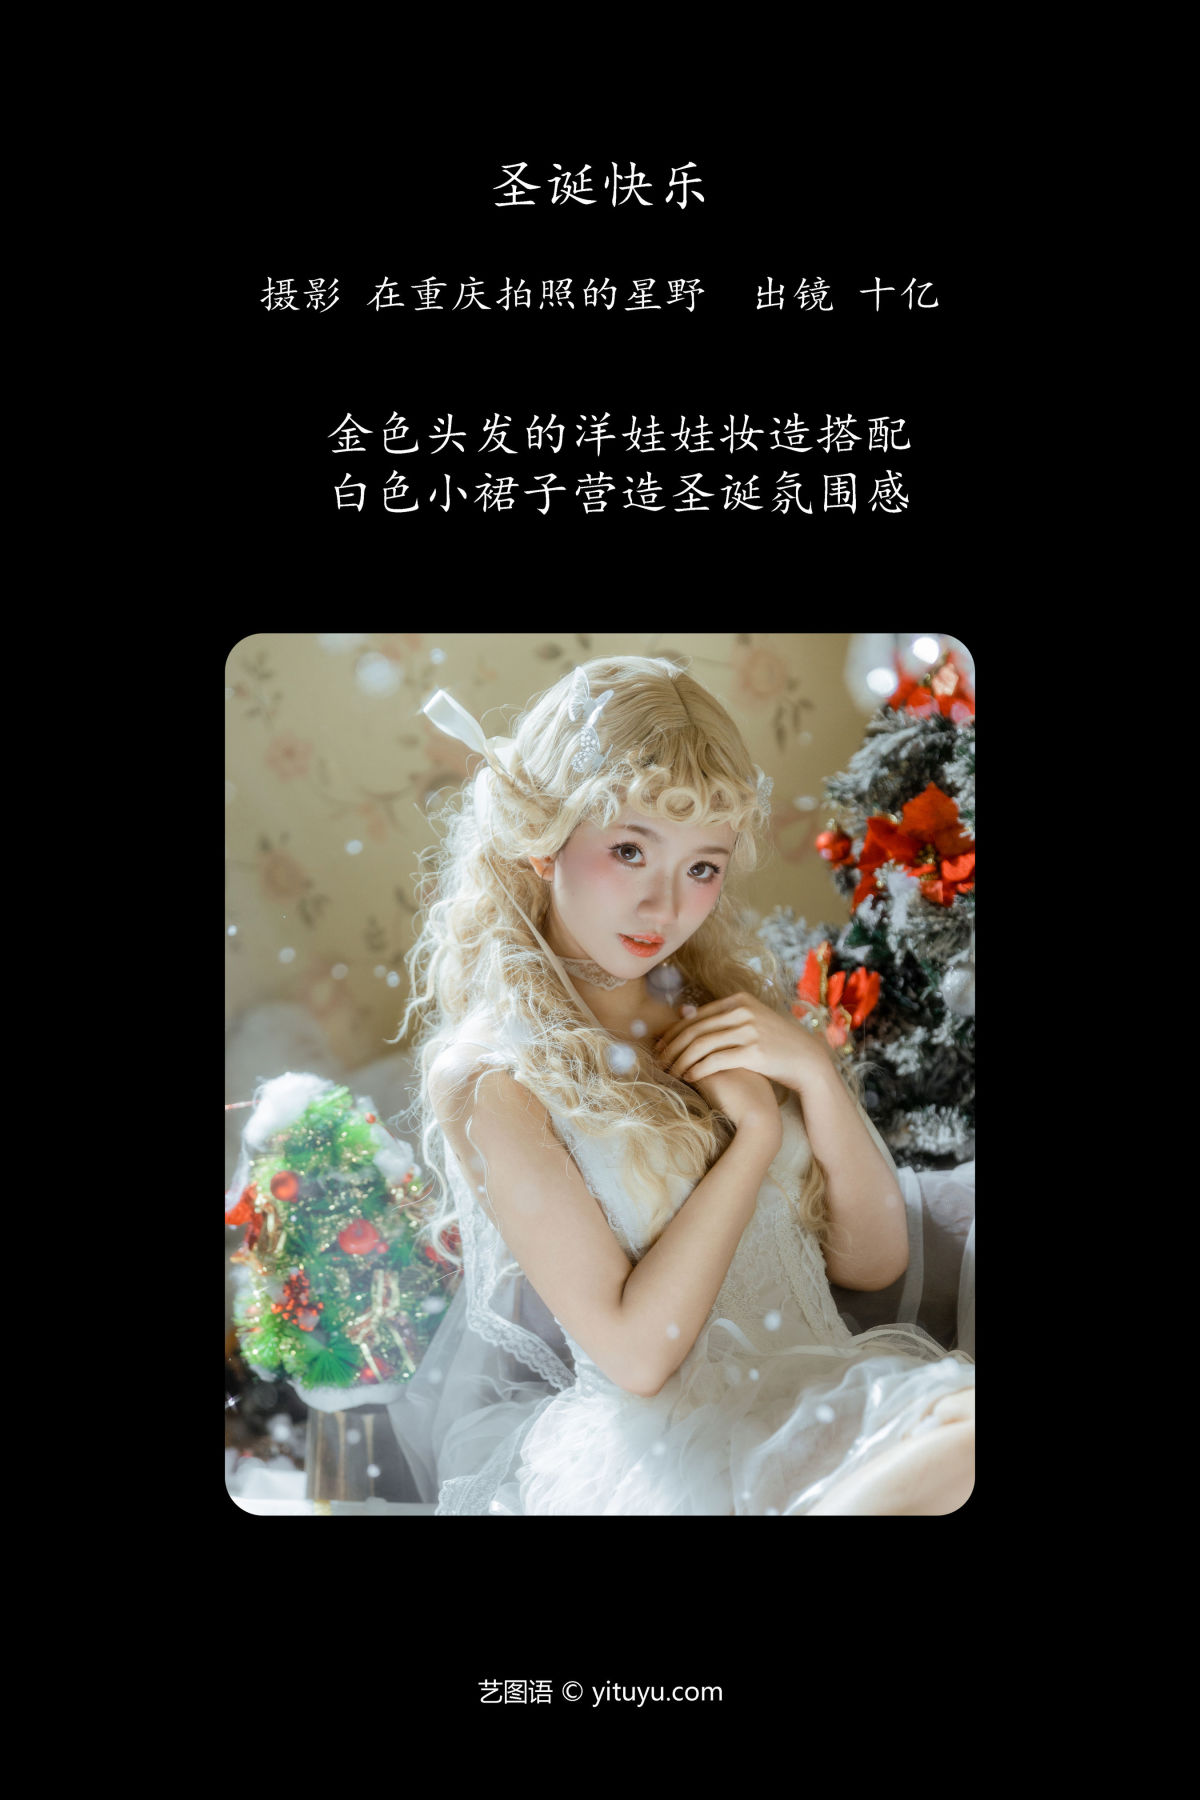 在重庆拍照的星野_十亿《圣诞快乐》美图作品图片2